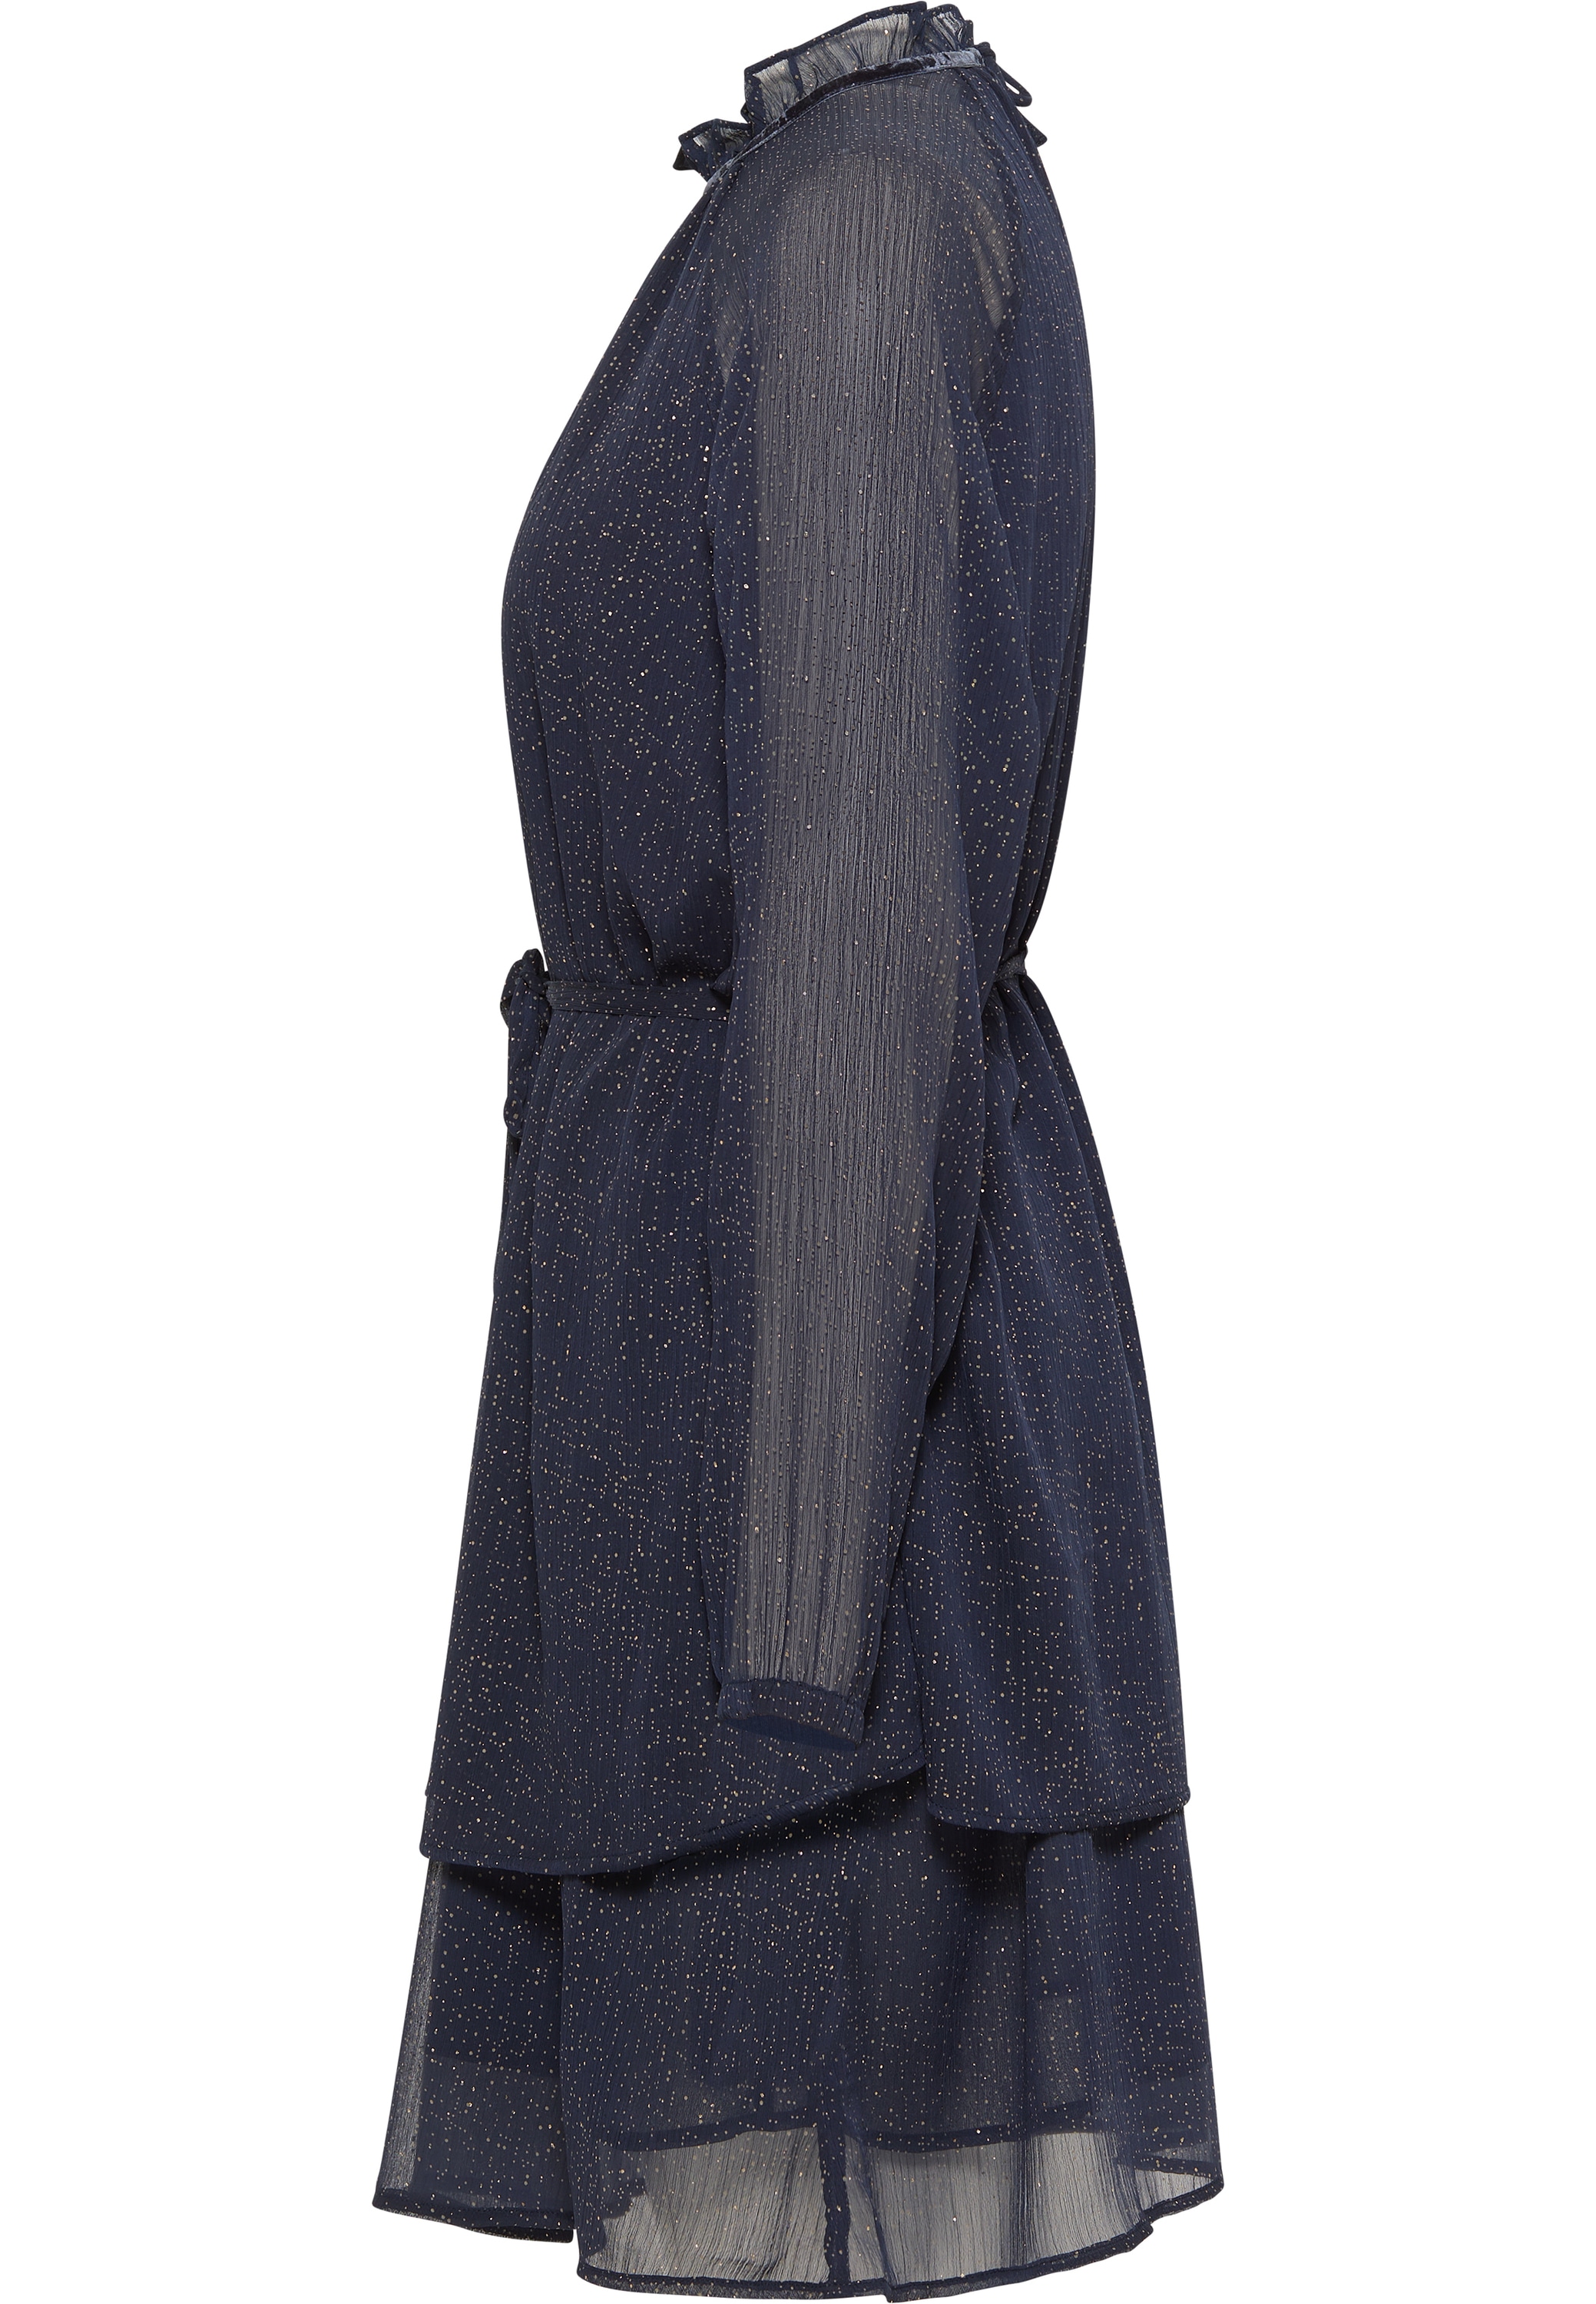 OTTO Shop dress« Online bestellen Minikleid im Fanny MUSTANG foil »Style